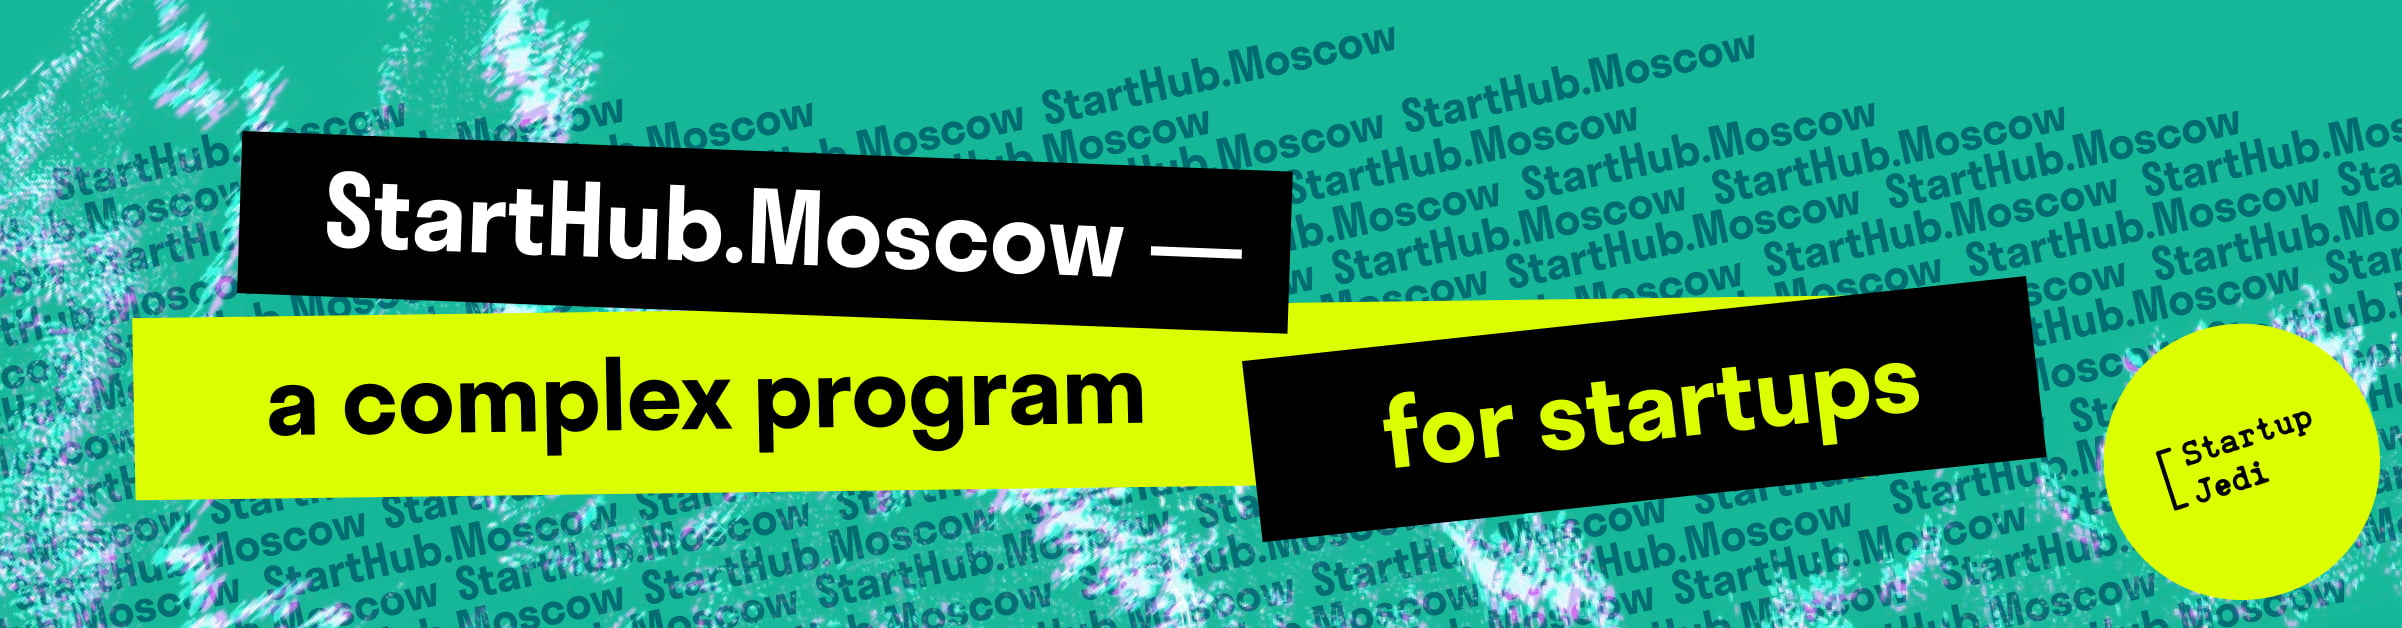 Московское инновационное агентство объявляет новый конкурс на бесплатную образовательную программу для стартапов - StartHub.Moscow